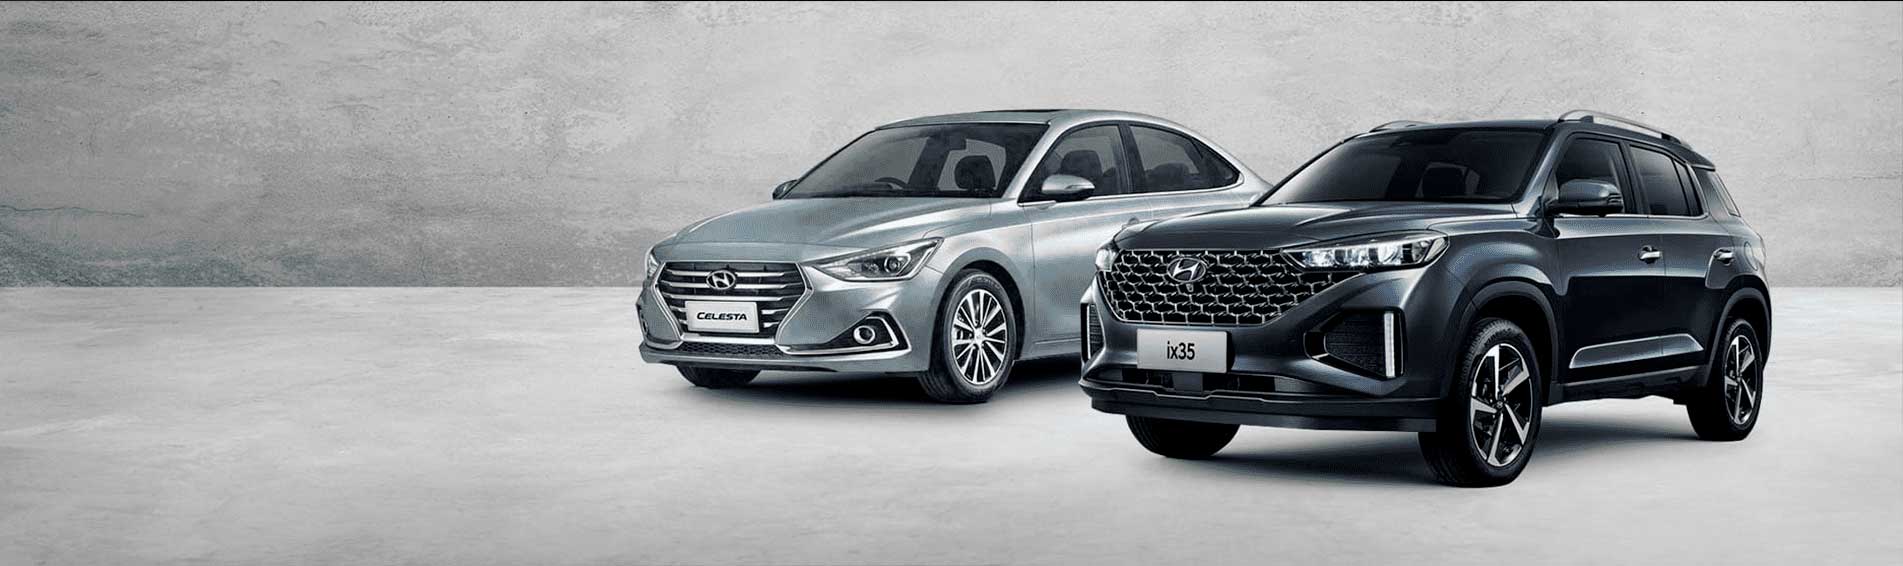 Новые Hyundai Сelesta  и Hyundai ix35 <br>с выгодой до 300 000р.